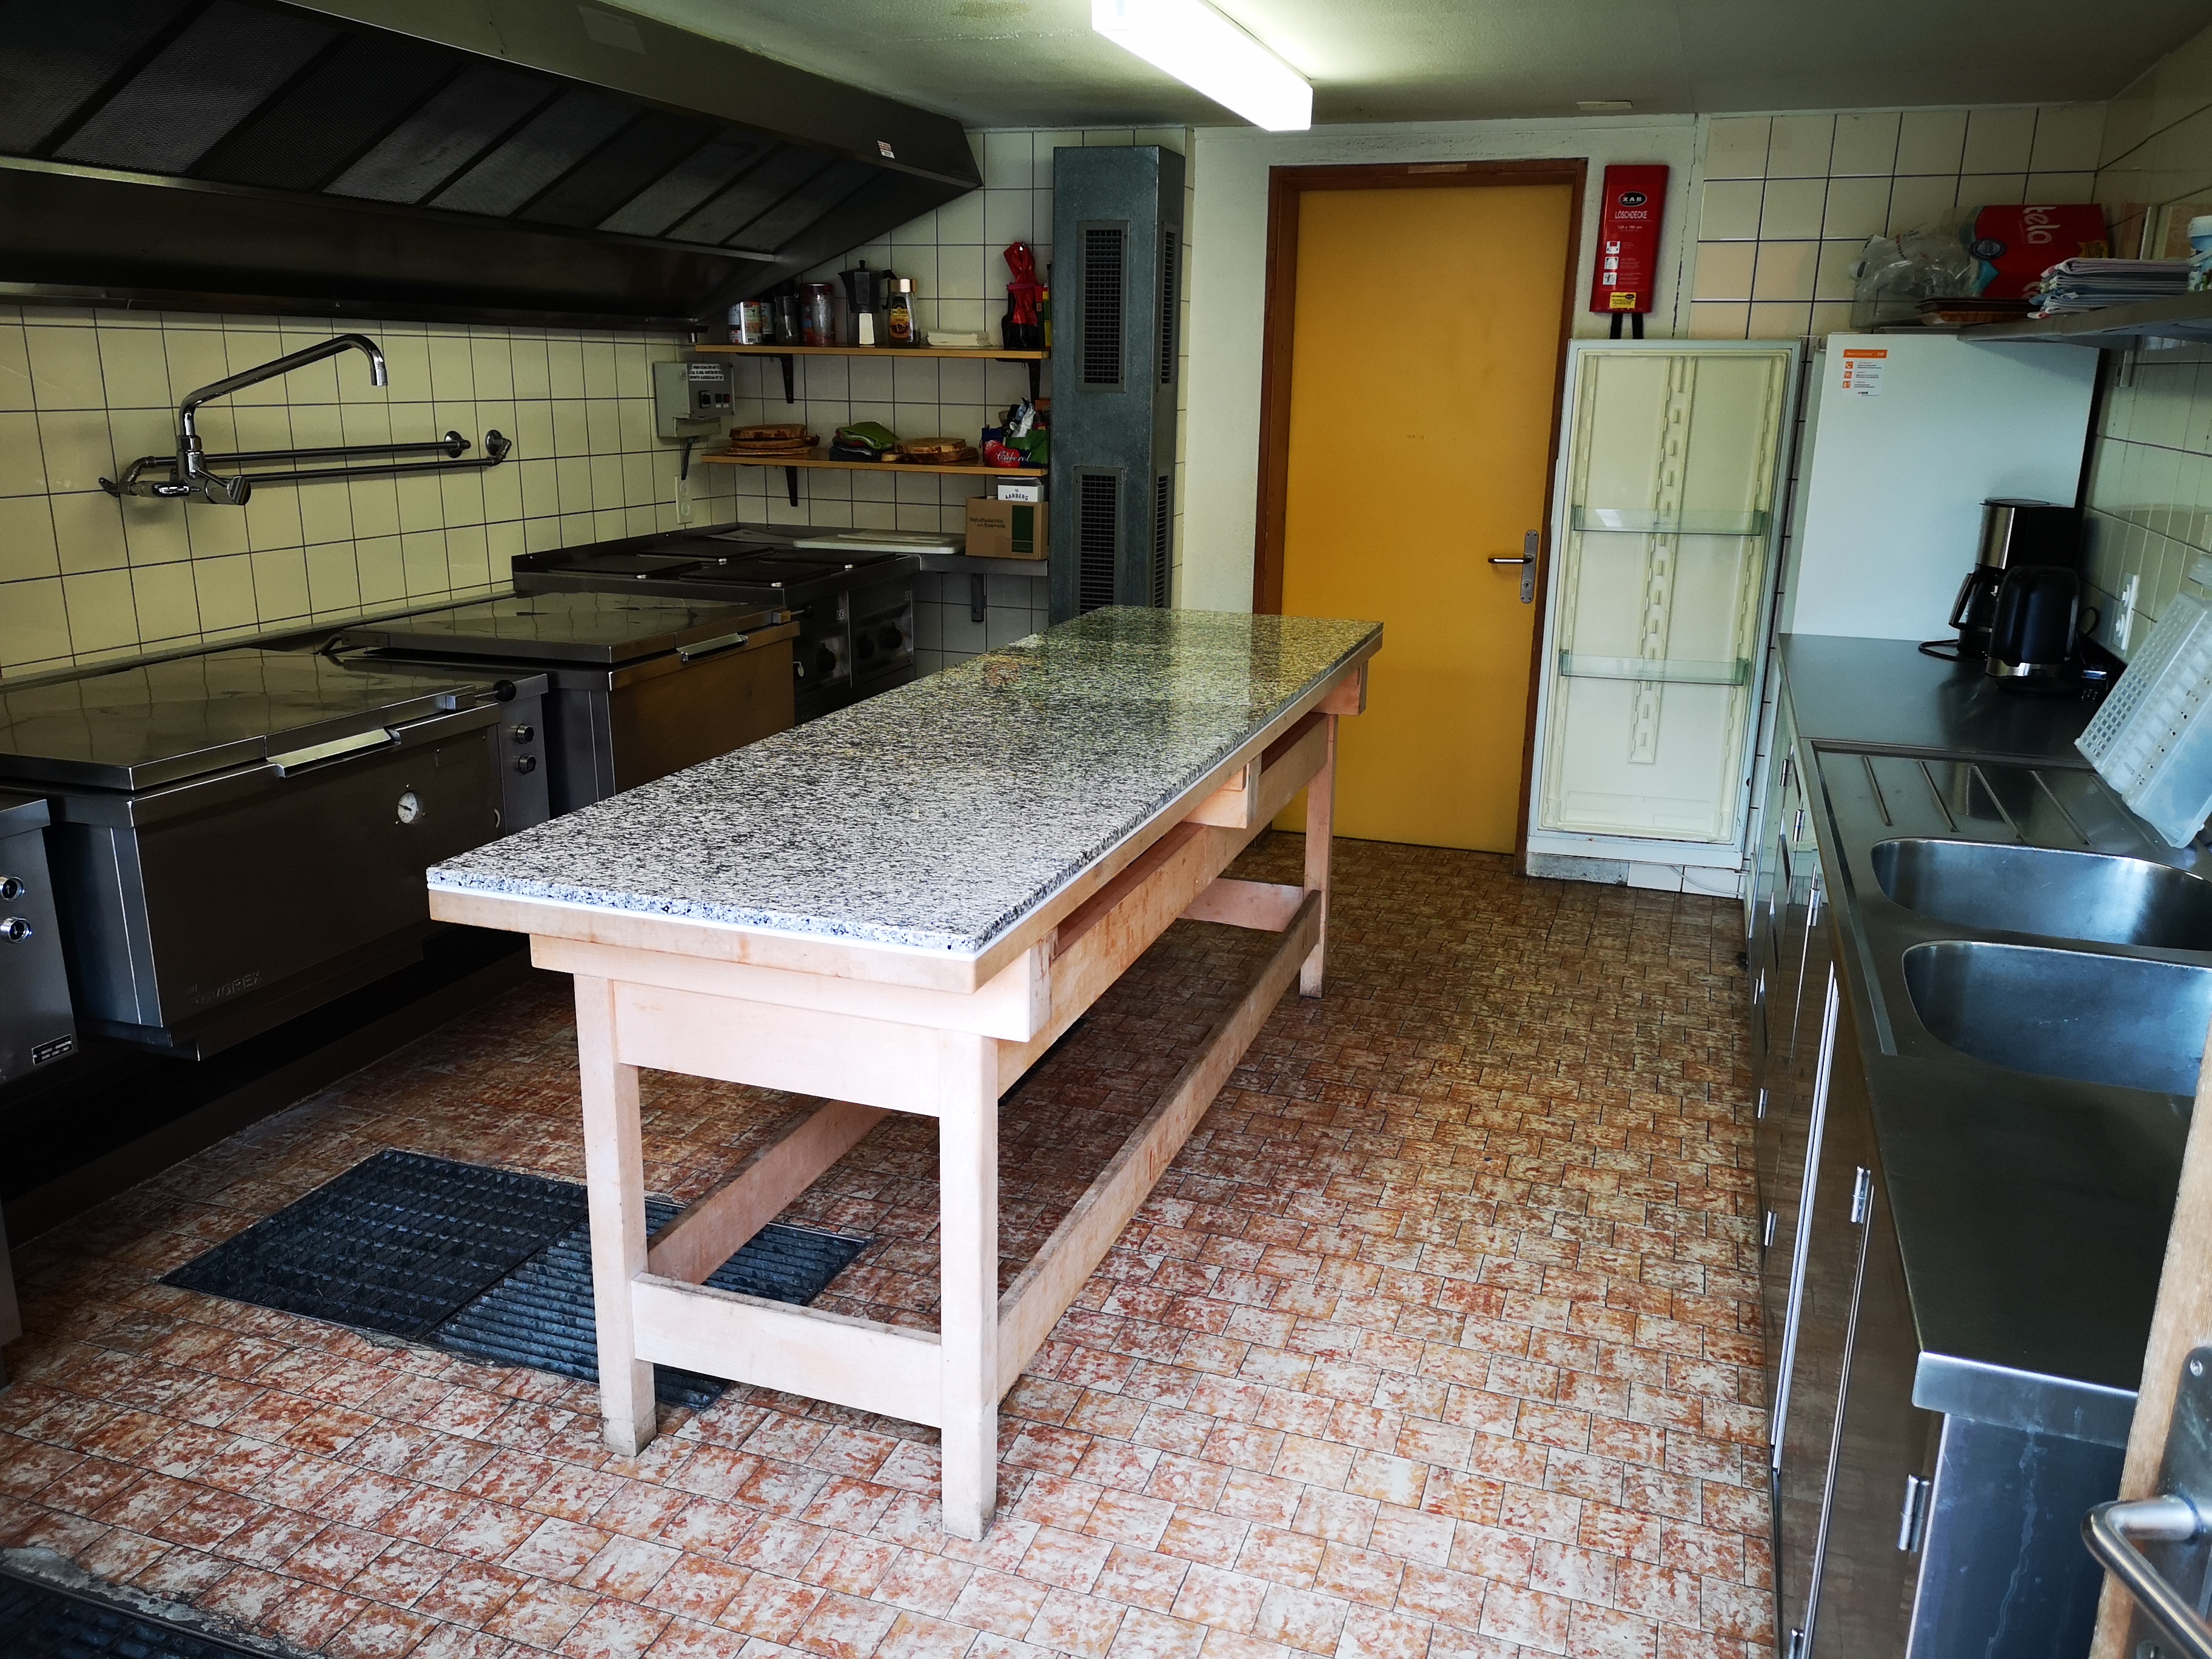 Die Küche verfügt über 2 elektrische Kippkessel, 1 Kochherd mit 4 Platten und Backofen, Kühlschrank und Geschirr für ca. 70 Personen